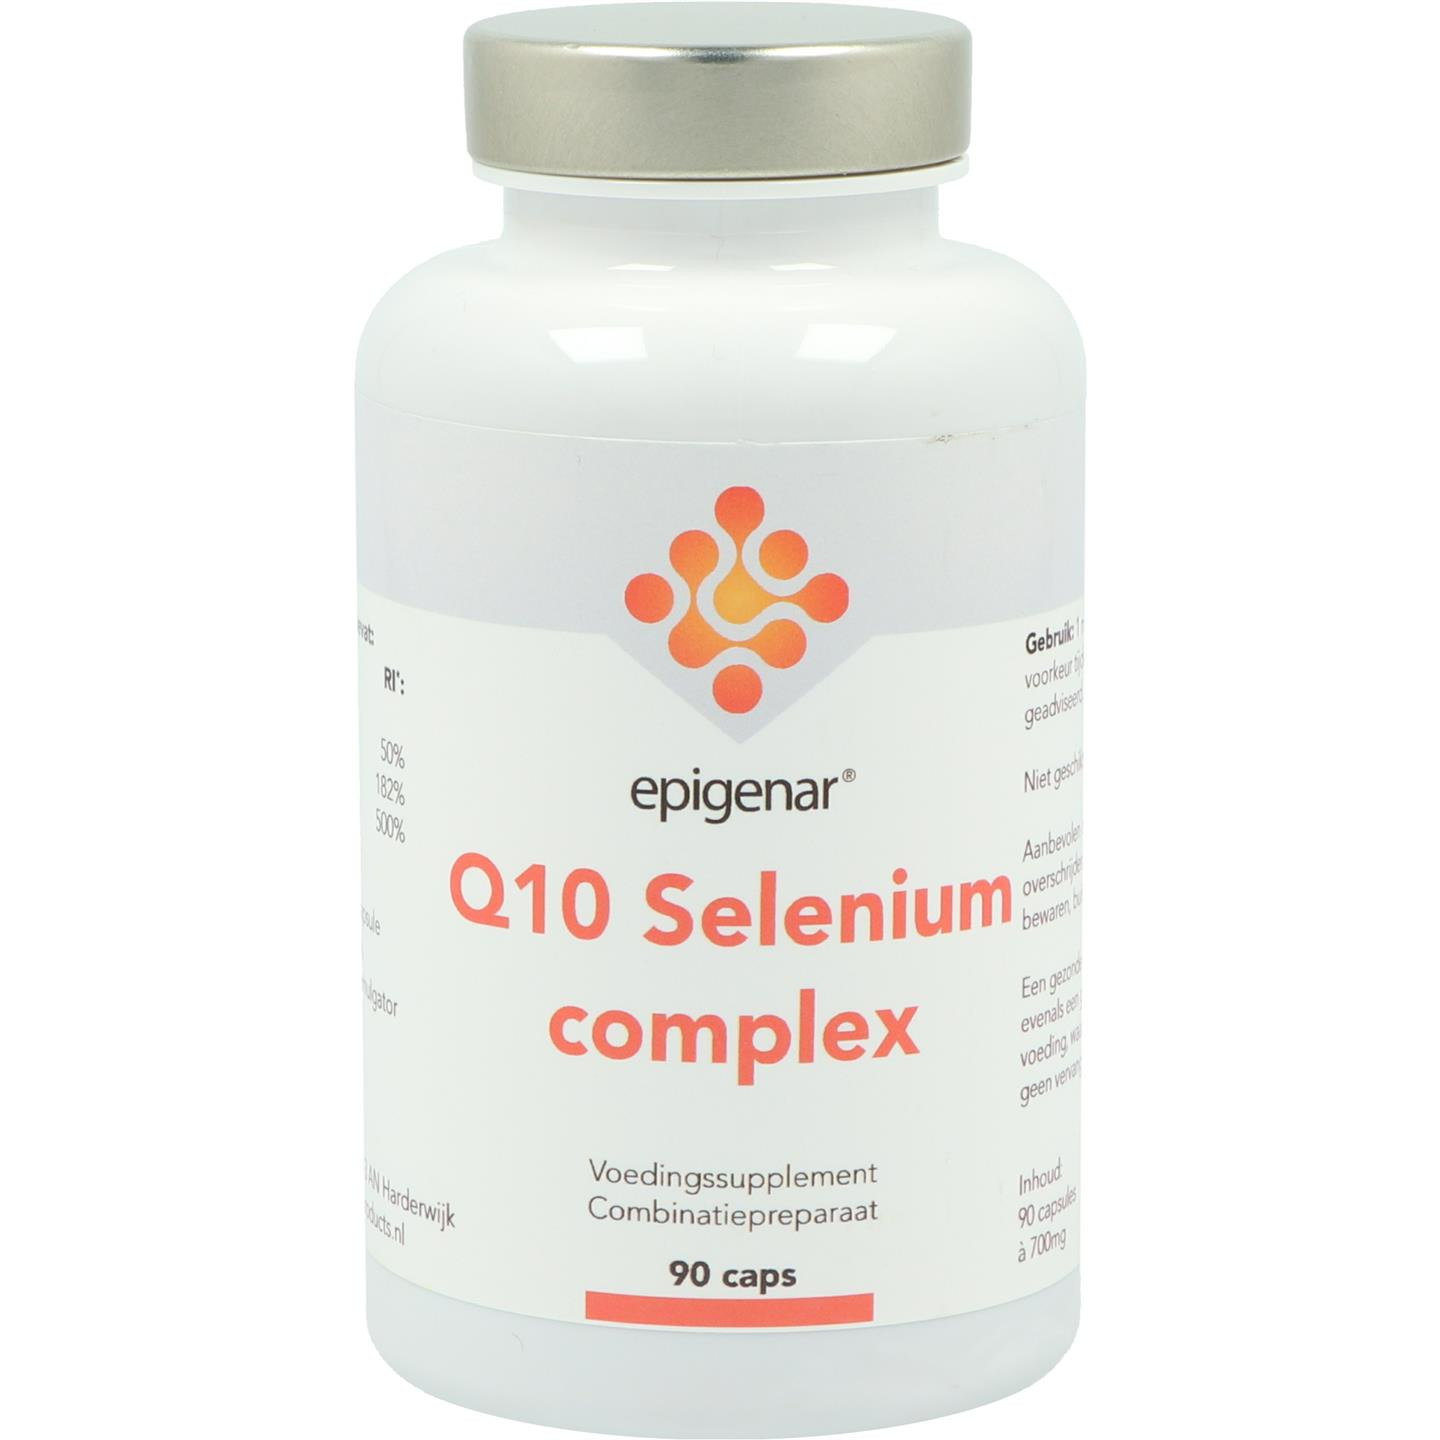 Q10 Selenium complex